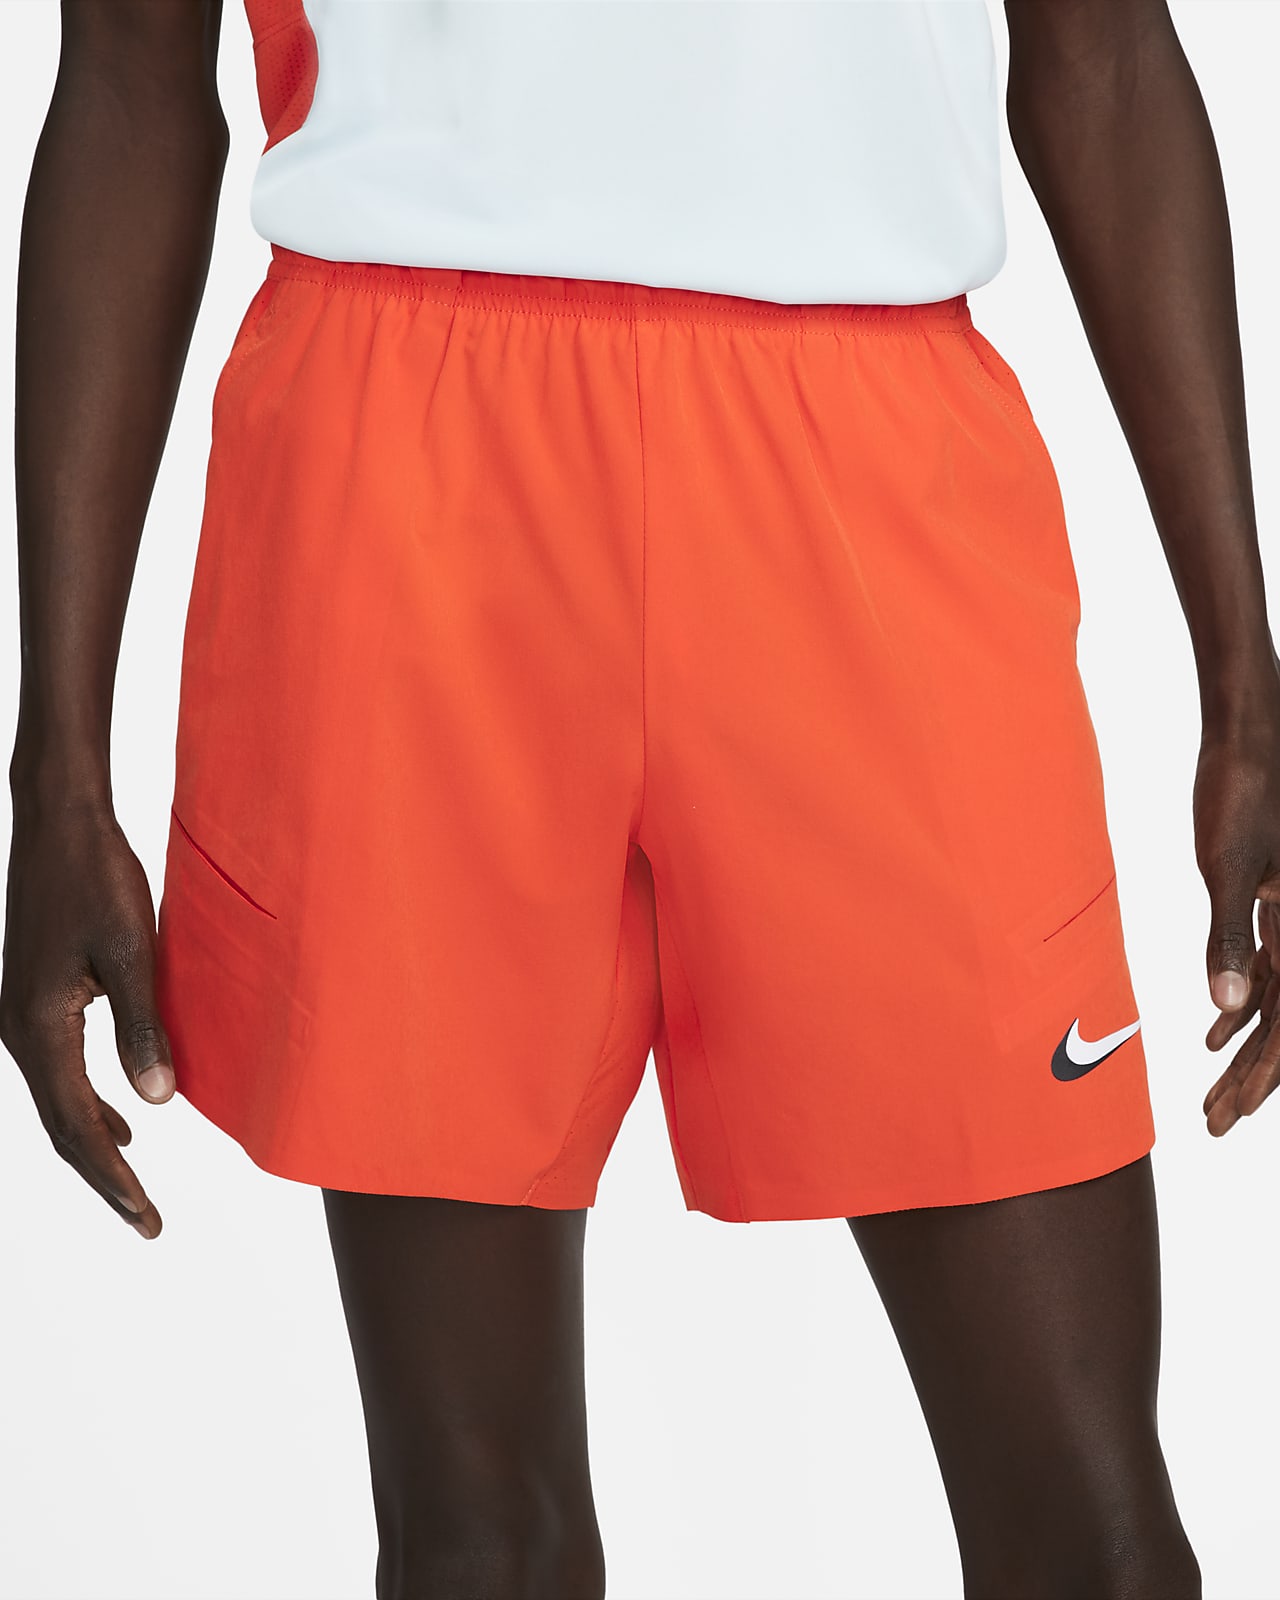 nike mens shorts orange